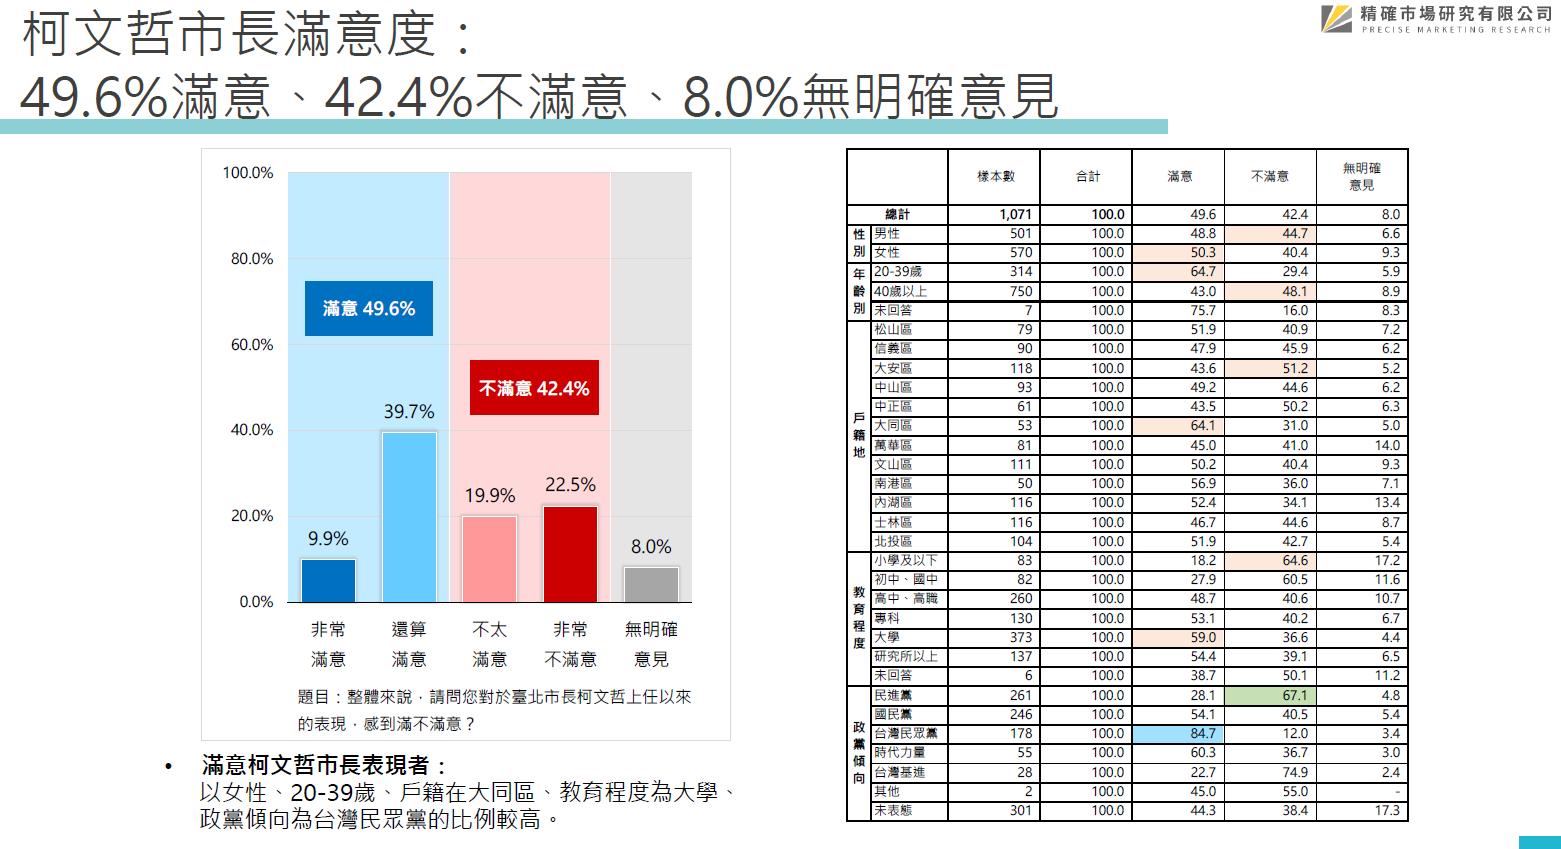 匯流臺北市民調 蔣29.6% 黃28.2% 陳25.6%